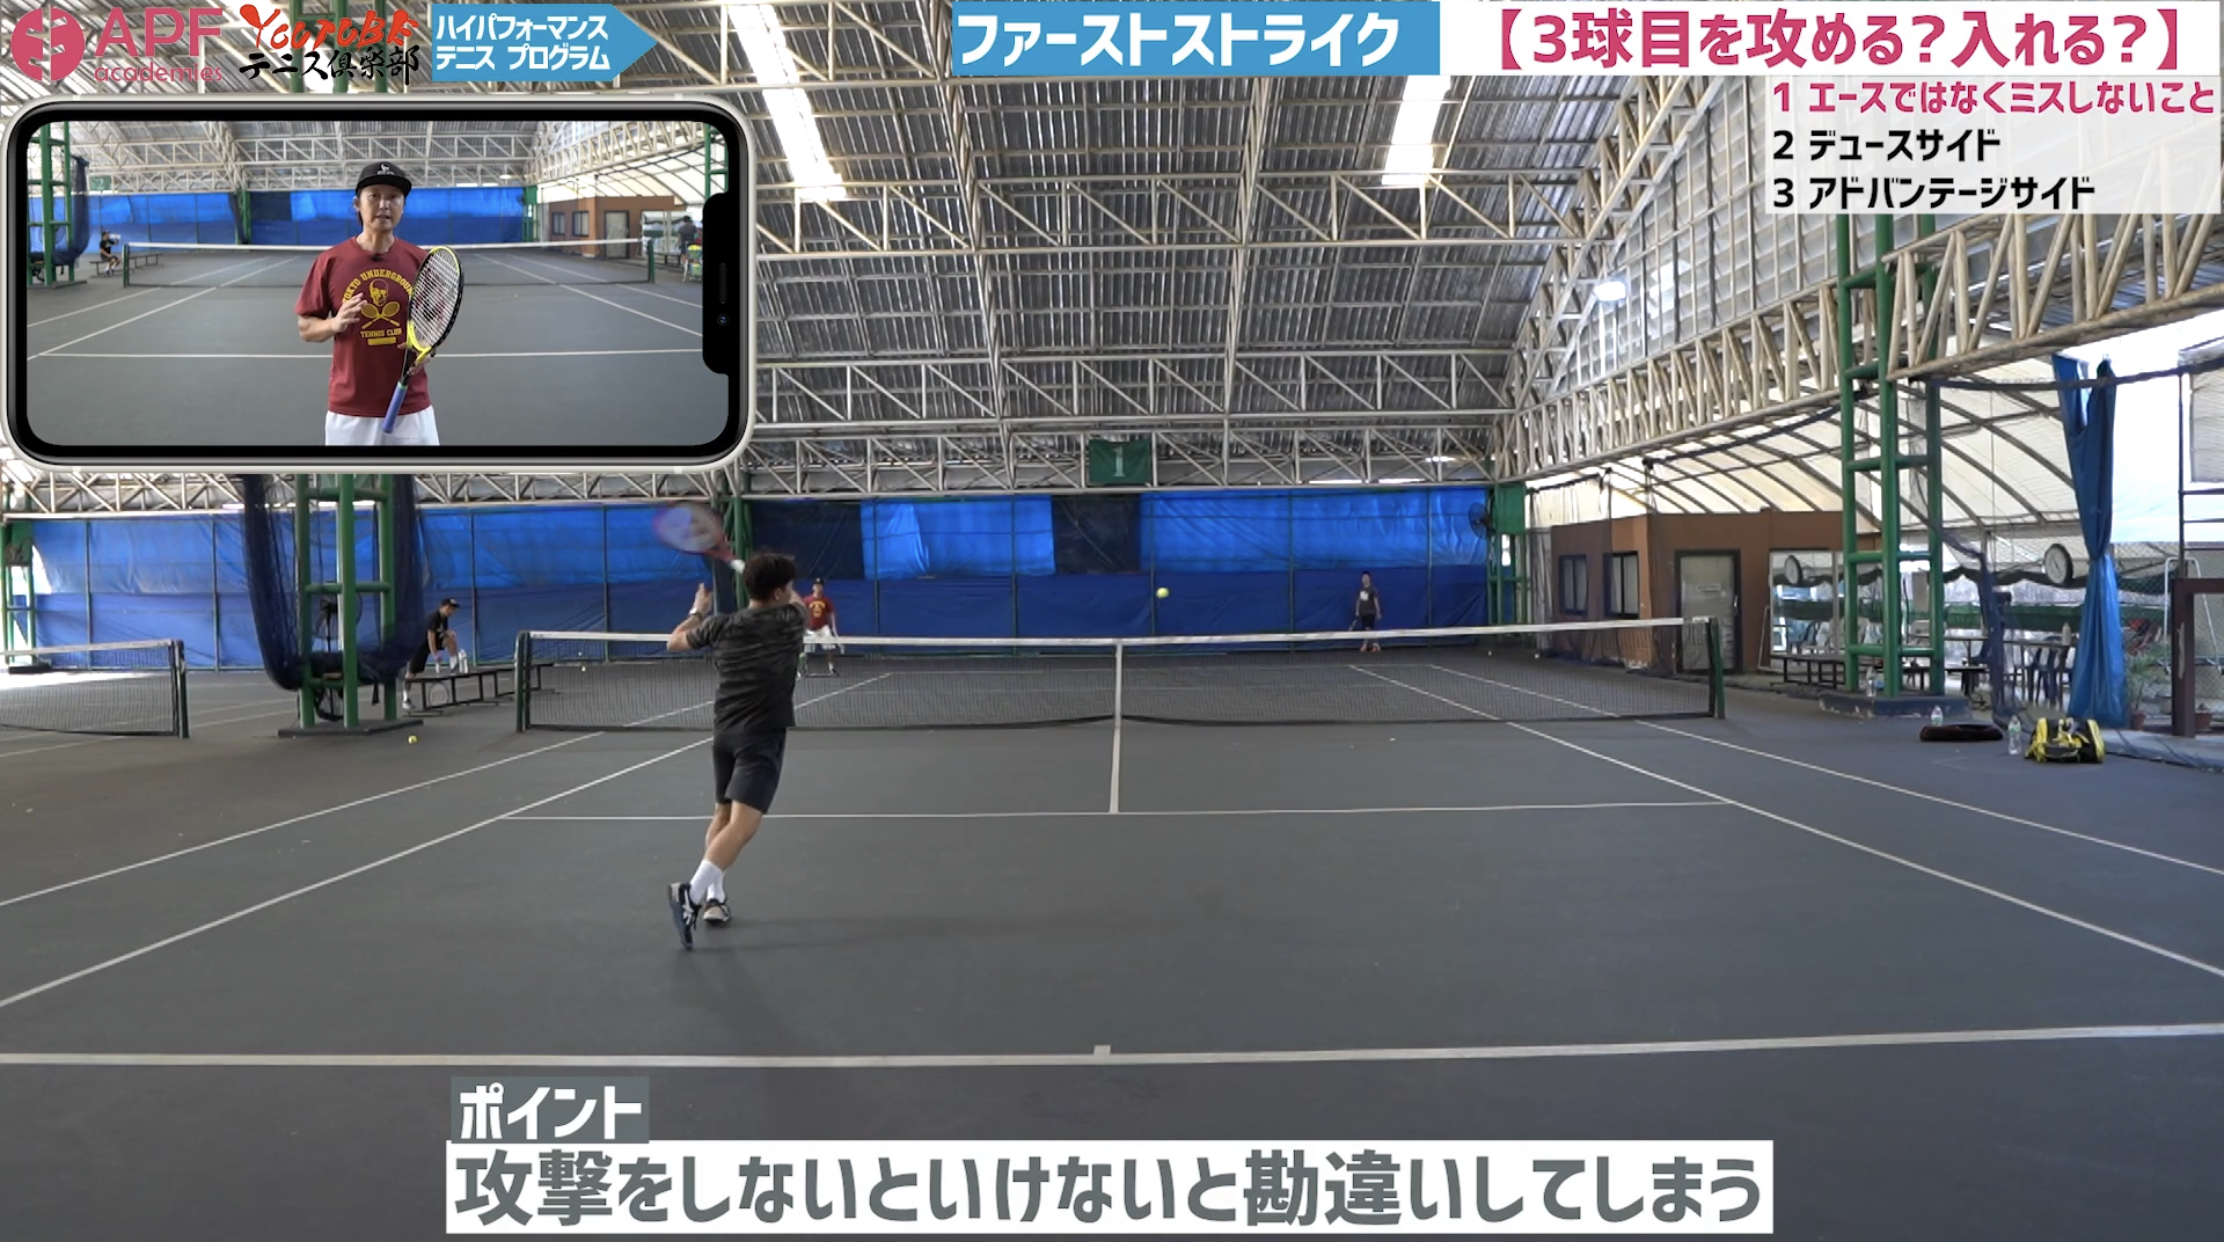 3球目攻撃というものの 実は3球目ミスの方が多くありませんか テニス 3球目攻撃 テニスコーチ酒井亮太オフィシャルブログ